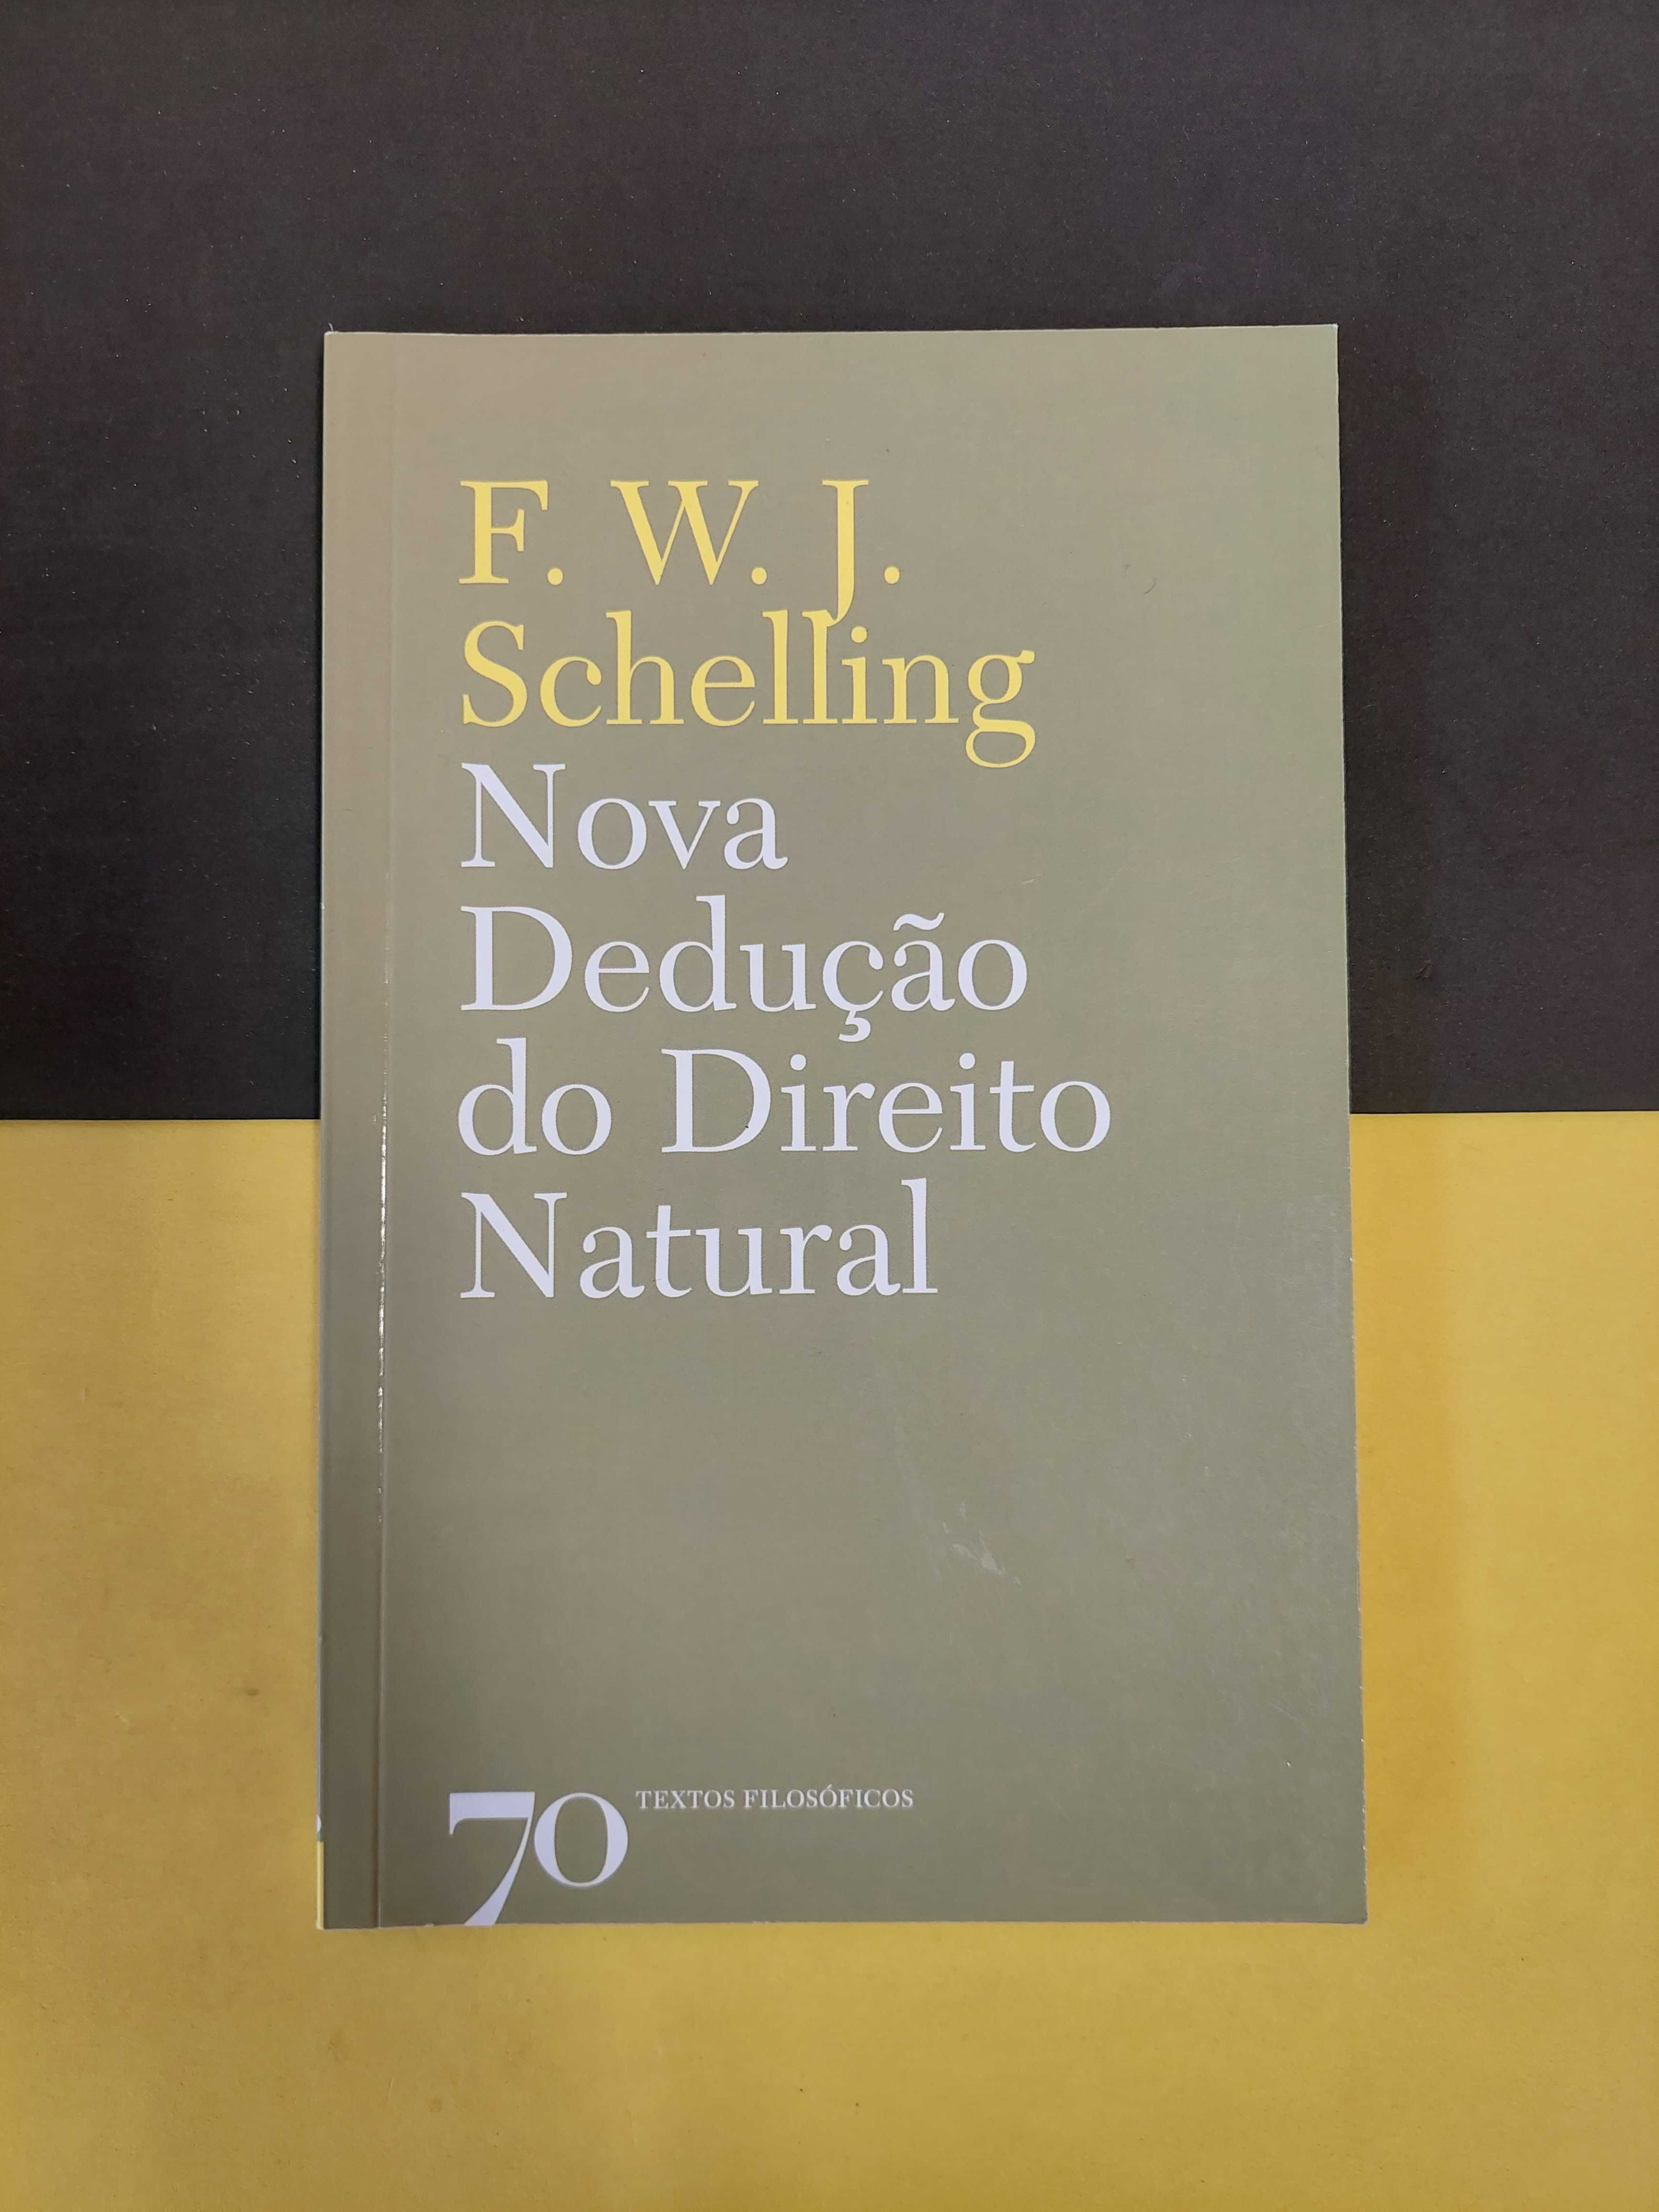 F.W.J. Schelling - Nova dedução do direito natural